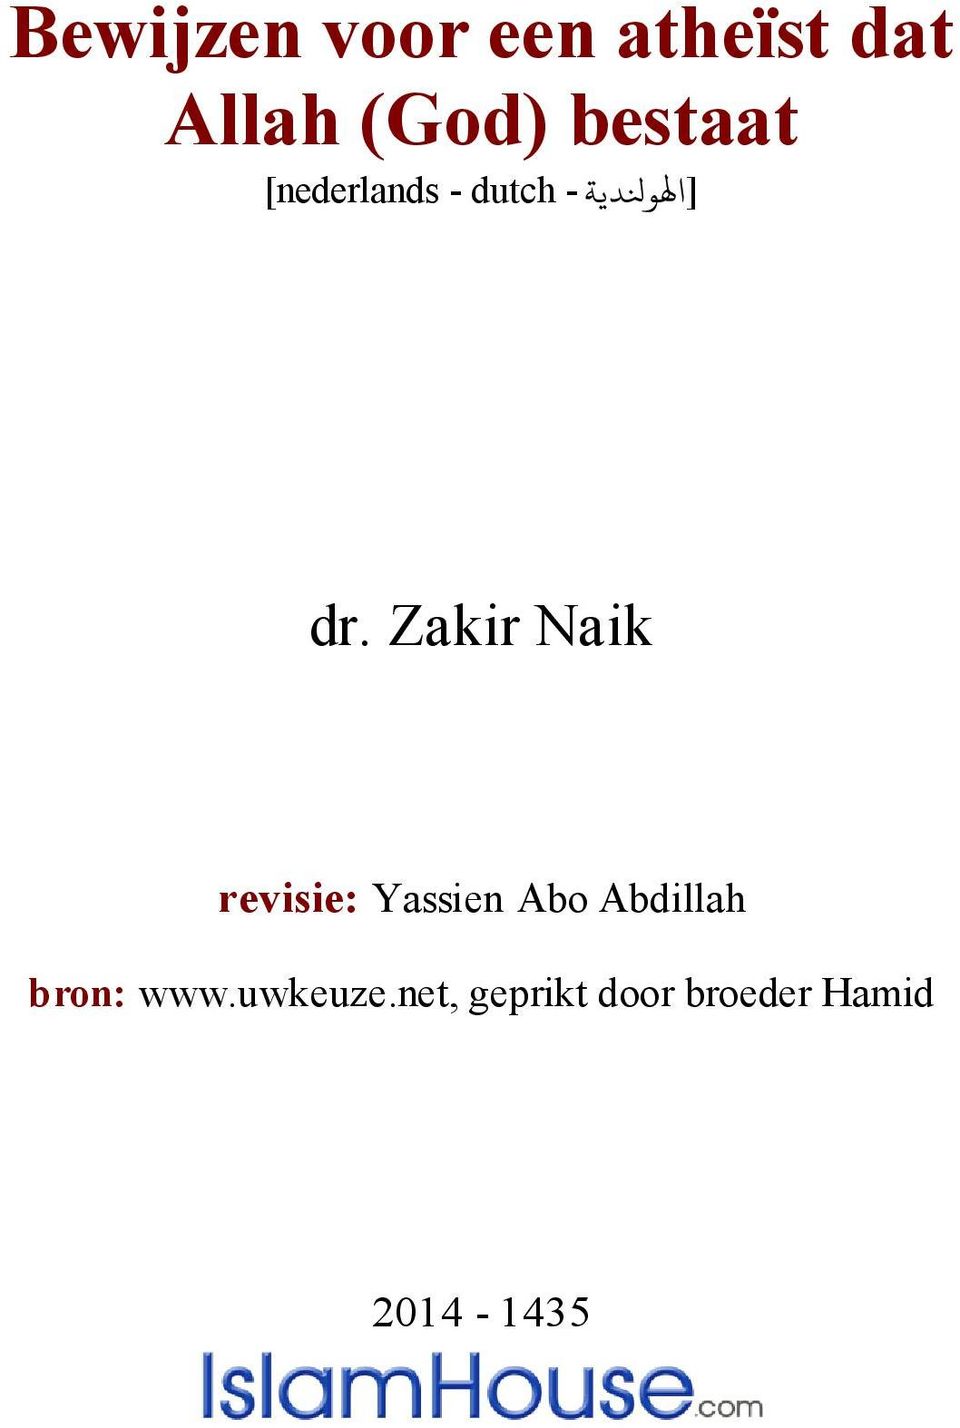 Zakir Naik revisie: Yassien Abo Abdillah bron: